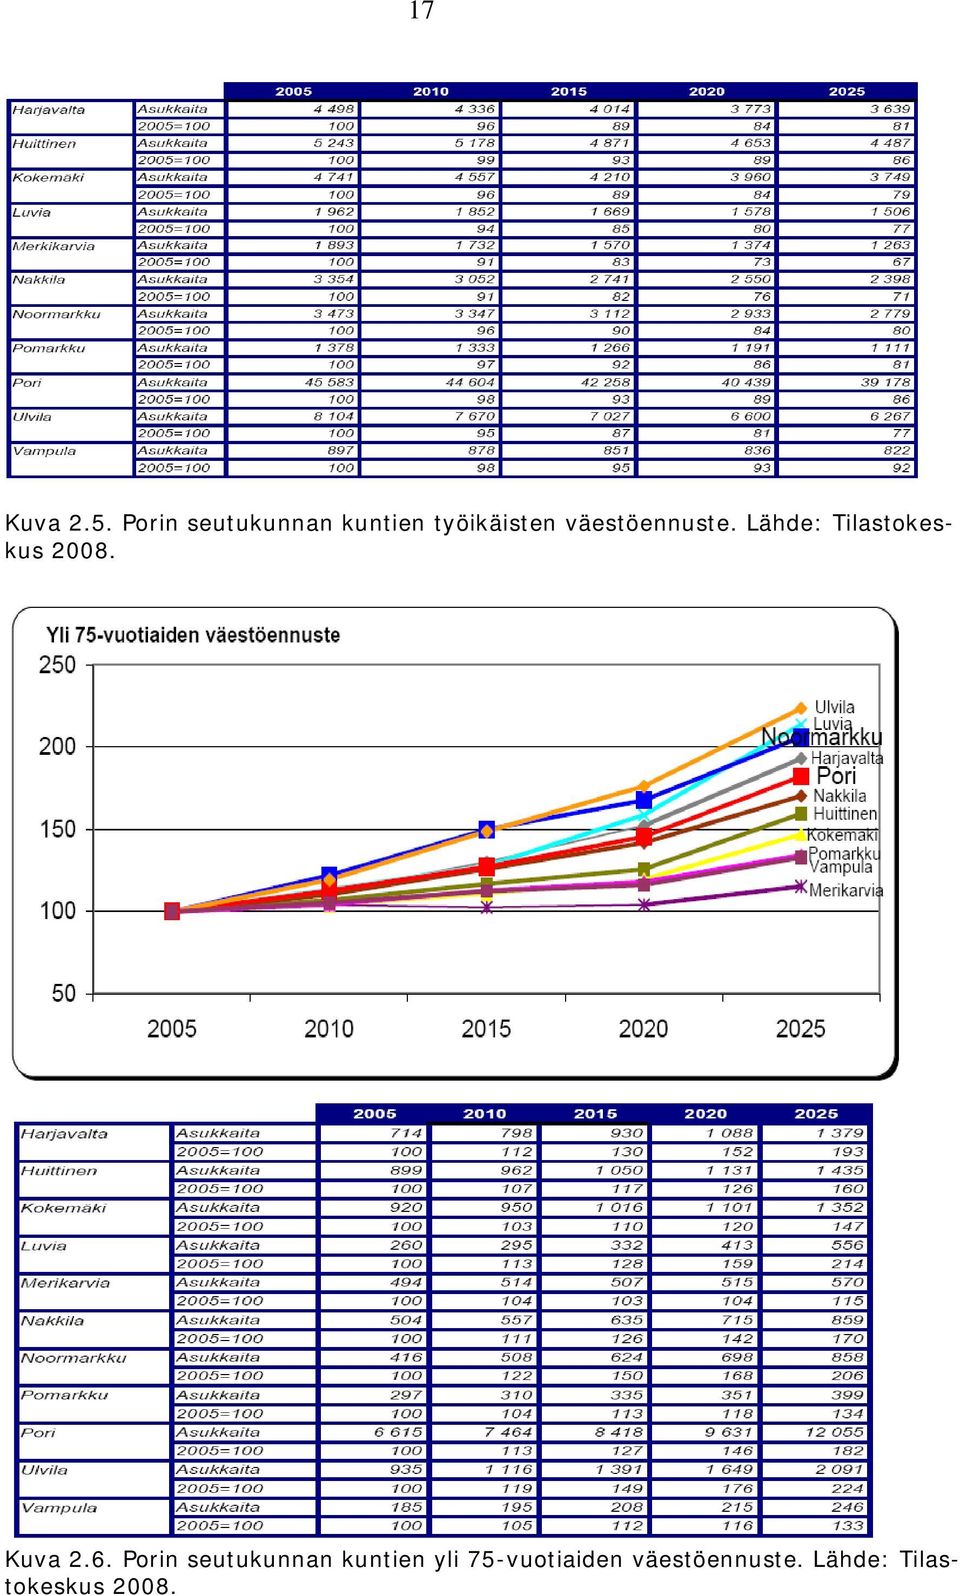 väestöennuste. Lähde: Tilastokeskus 2008.